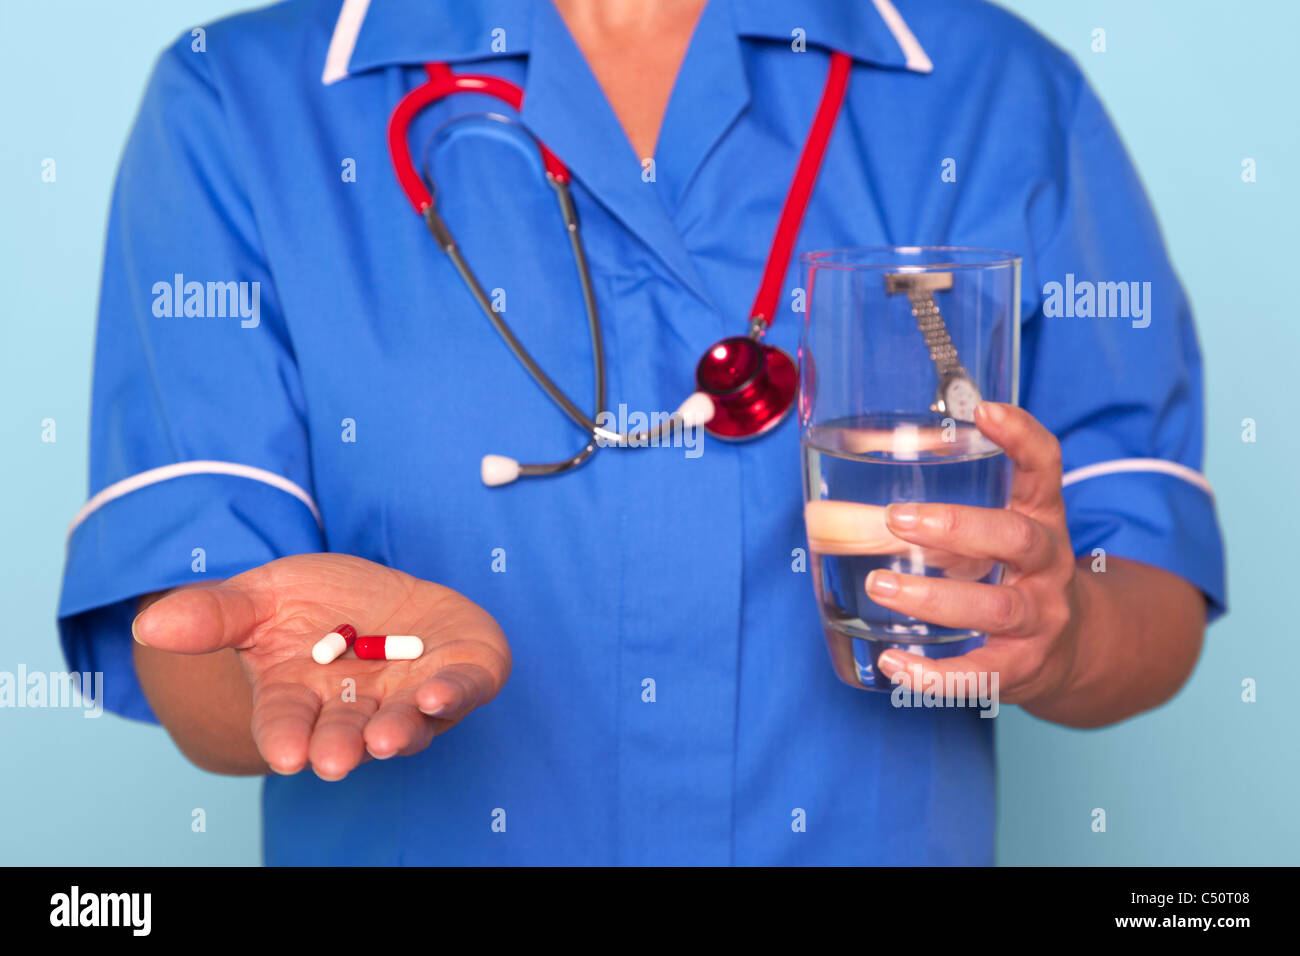 Foto von einer Krankenschwester in Uniform halten einige Pillen und ein Glas Wasser Stockfoto